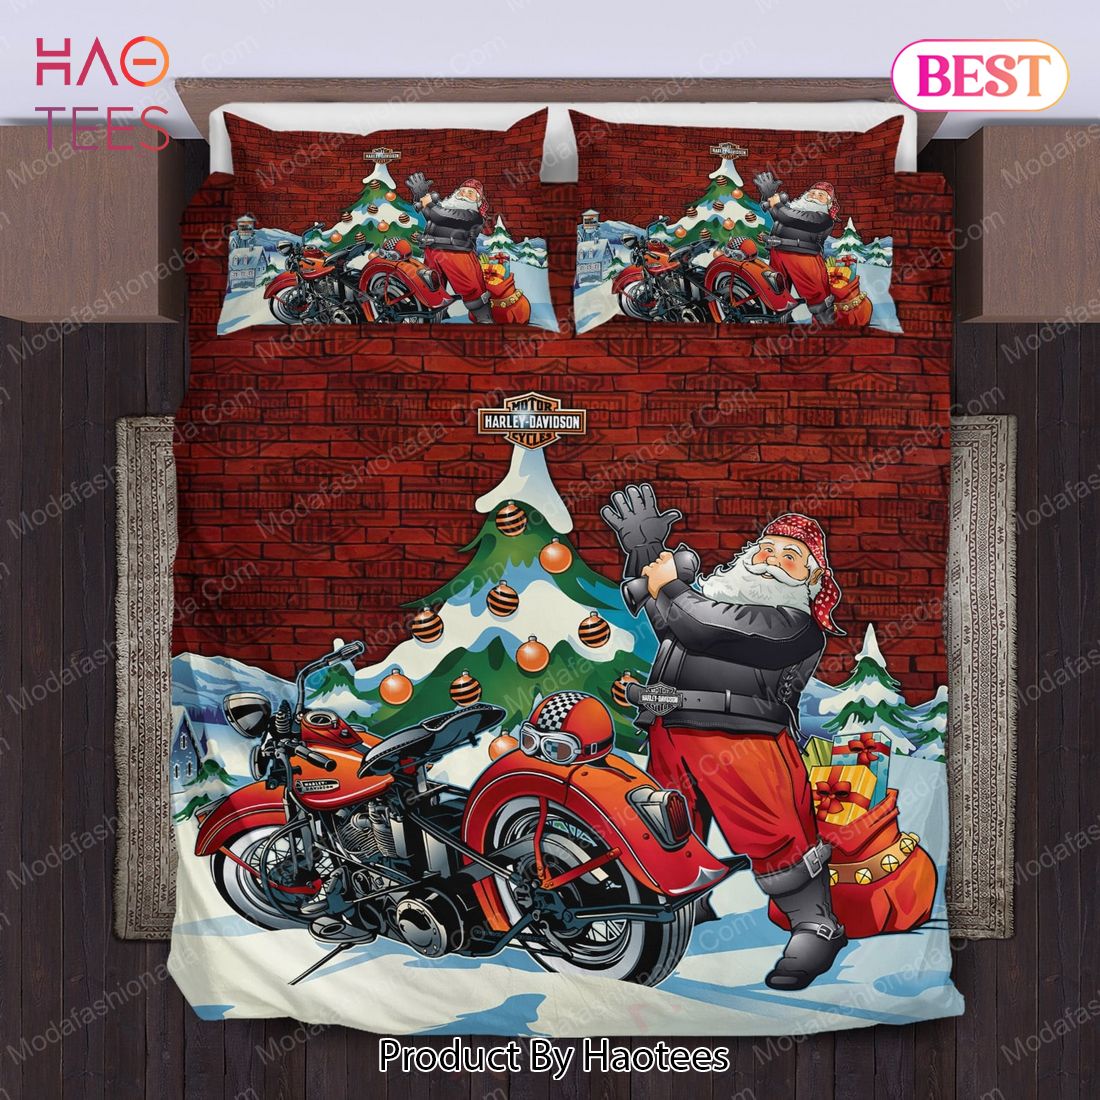 Buy Santa Claus Harley Davidson Merry Christmas Bedding Sets Bed Sets, Bedroom Sets, Comforter Sets, Duvet Cover, Bedspread